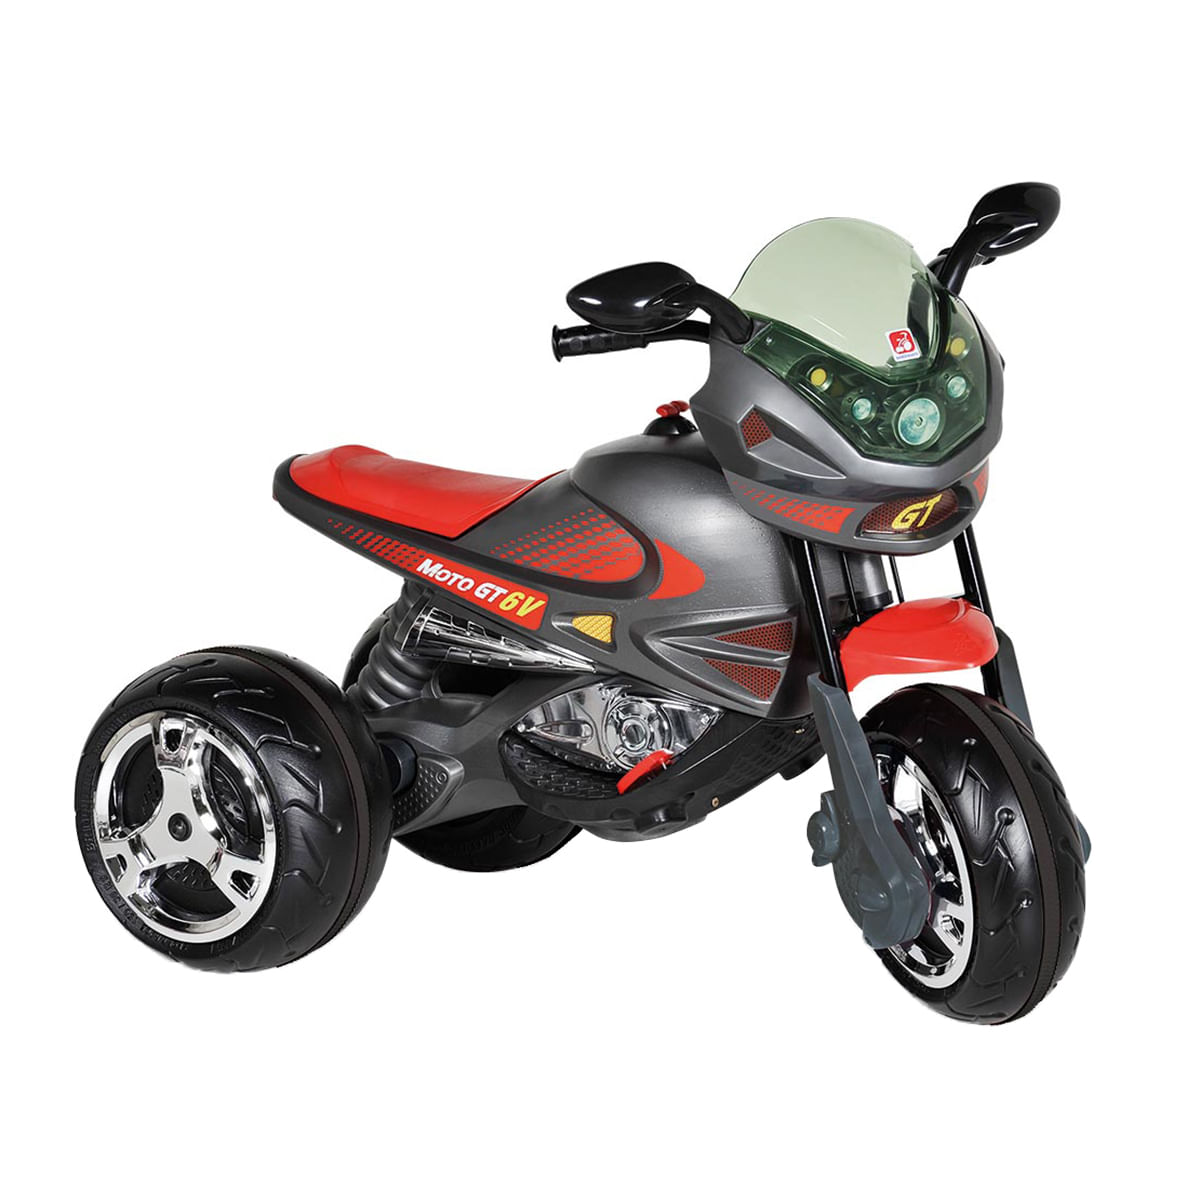 Moto Elétrica Infantil Super Moto GT2 Turbo Vermelha 12V - B